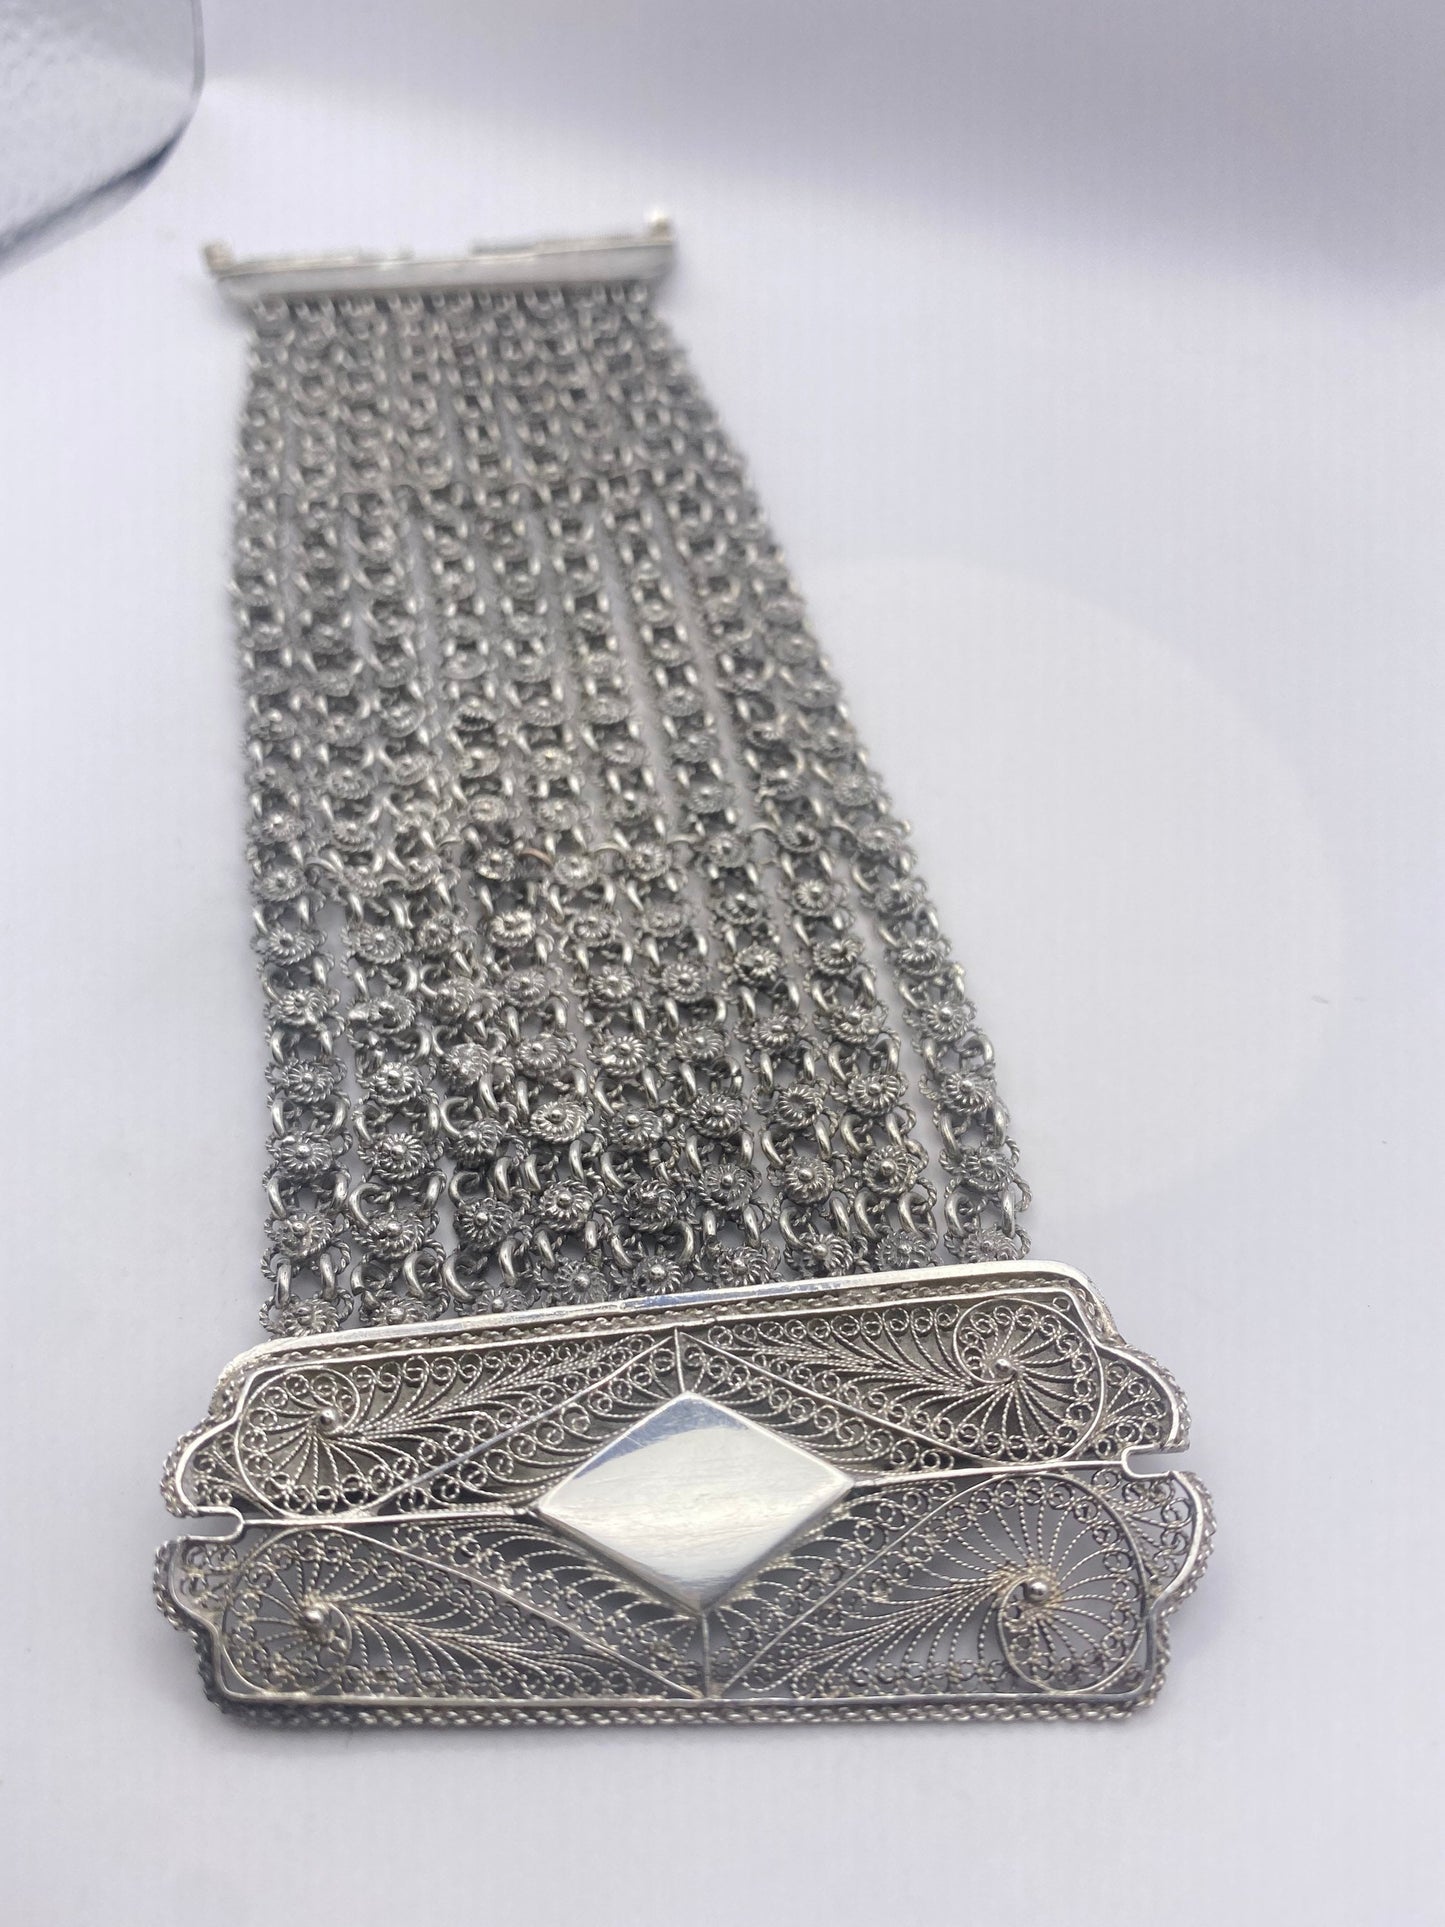 Vintage 925 Sterling Silver Filigree Flower Bracelet